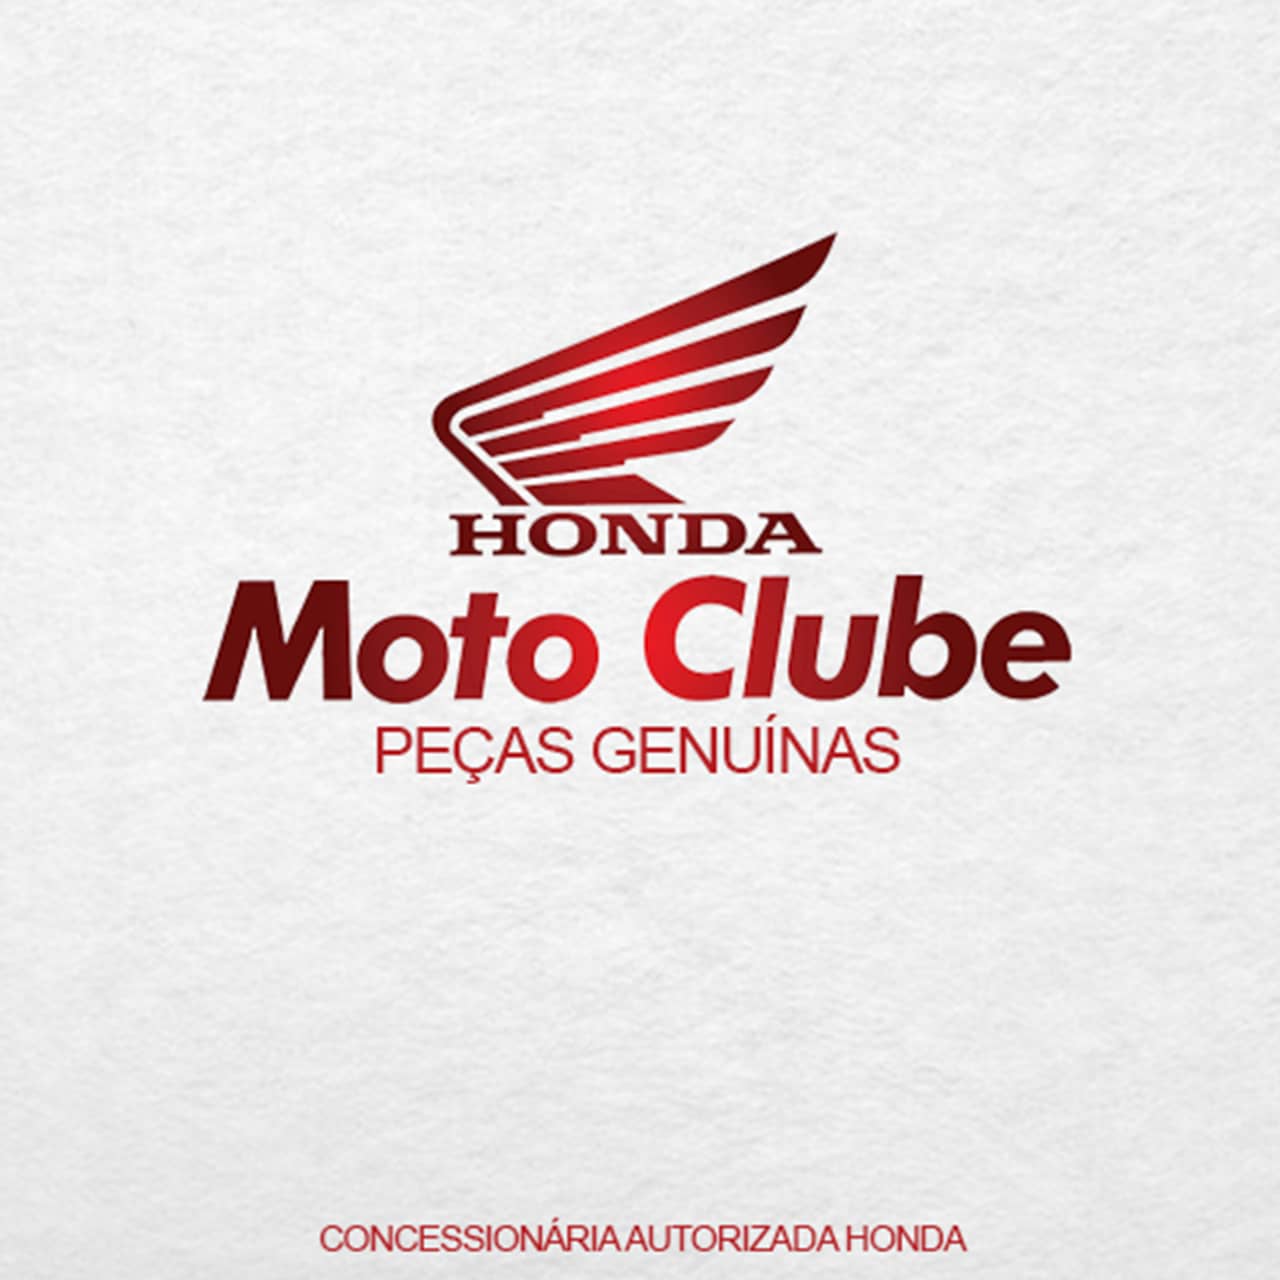 Embreagem Partida Quadriciclo Honda Fourtrax Trx 420 2008 2009 2010 2011 2012 2013 2014 2015 2016 2017 2018 2019 2020 2021 Original Honda - Foto 2